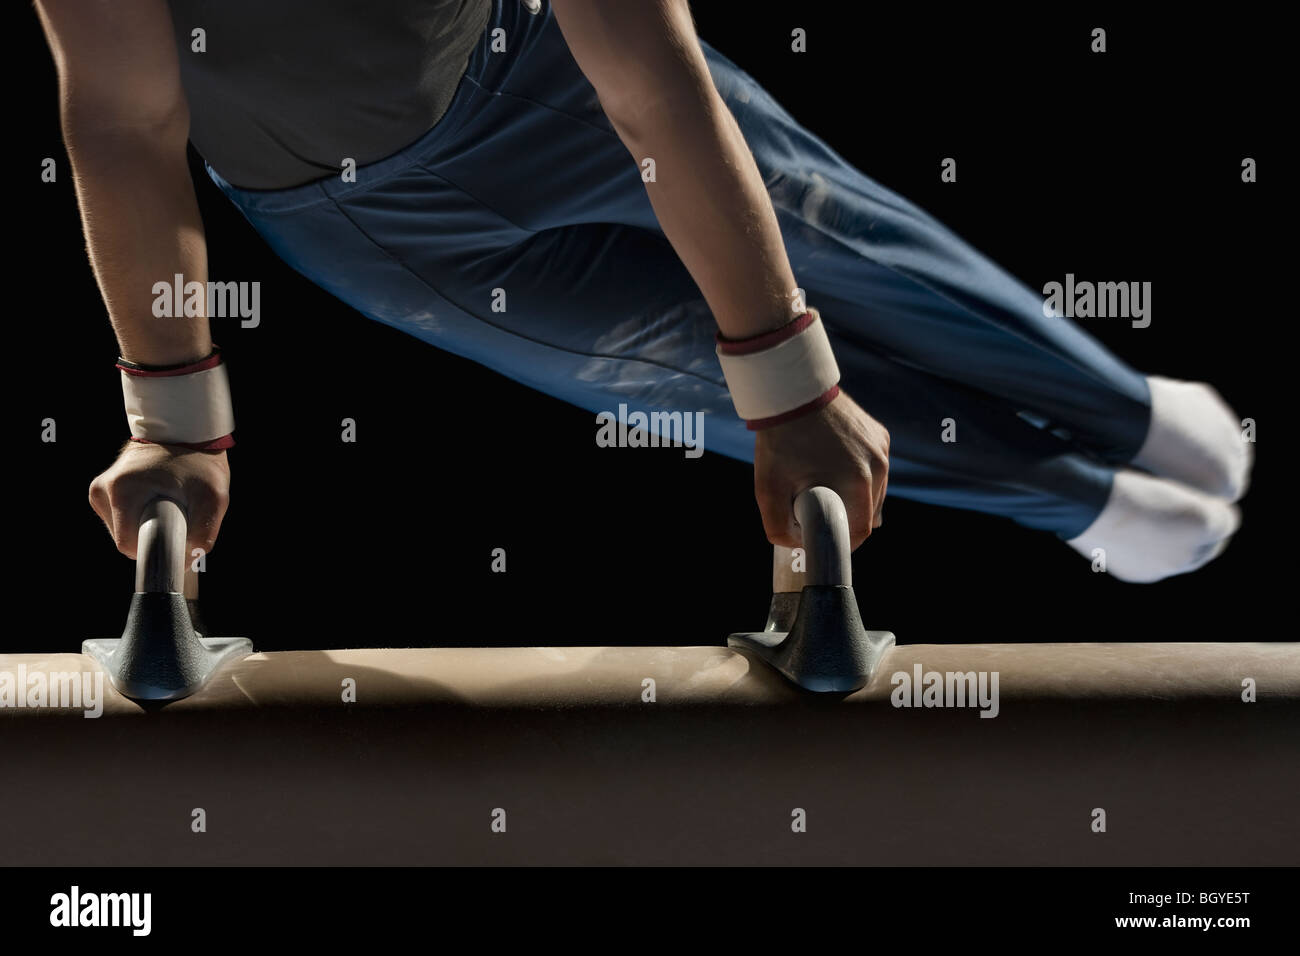 Gymnast swinging on pommel horse Stock Photo